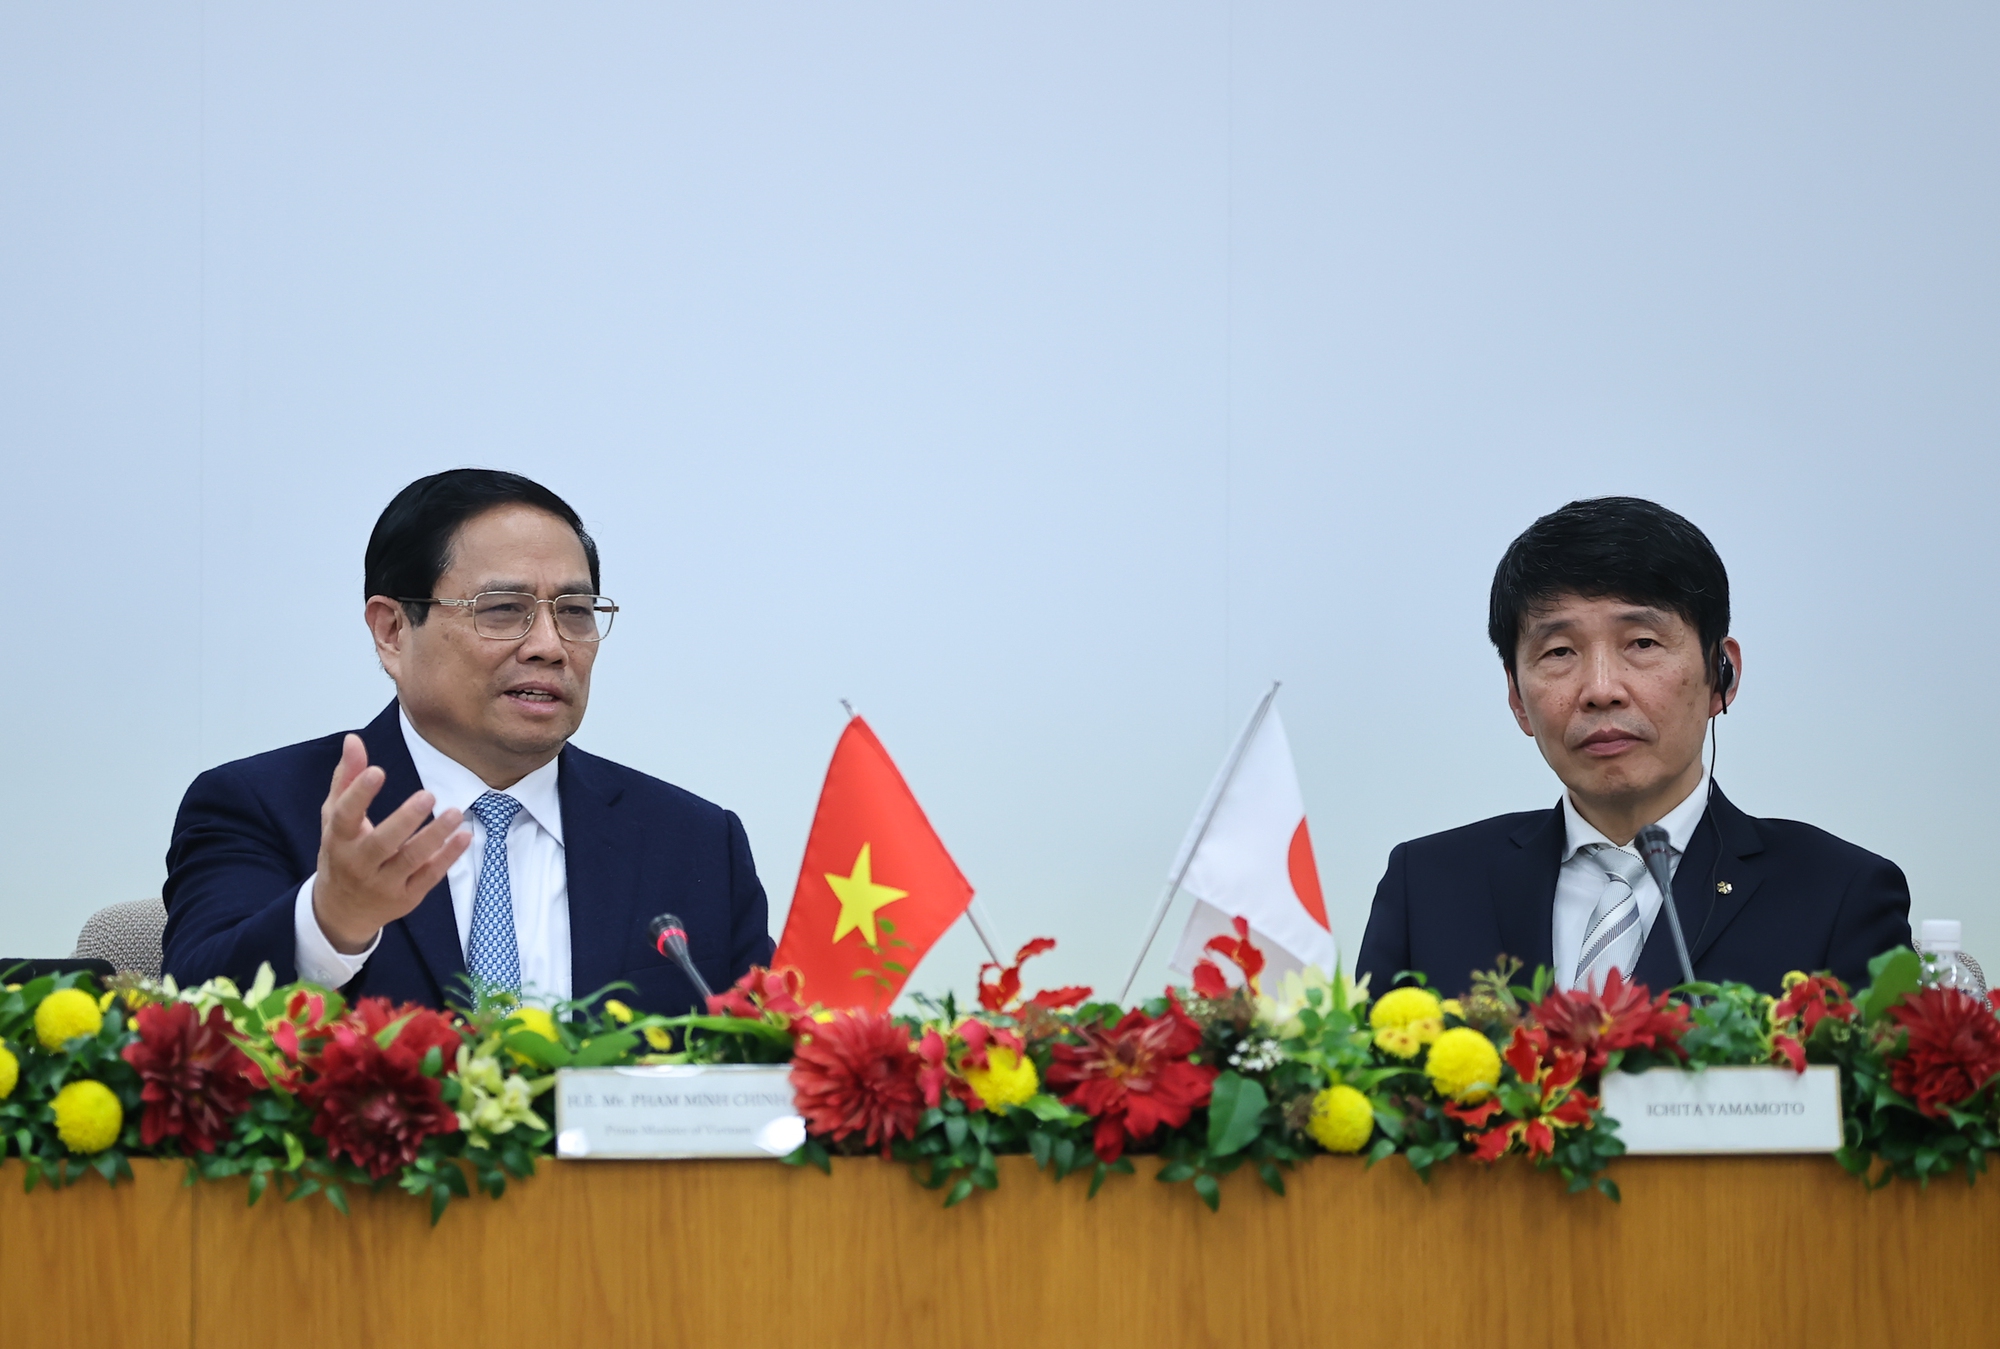 Thủ tướng khẳng định Việt Nam trân trọng và đánh giá cao các nhà đầu tư Nhật Bản luôn có sự quyết tâm, nghiêm túc, uy tín, trách nhiệm, tuân thủ pháp luật, quan tâm, chăm lo đời sống người lao động, chú trọng bảo vệ môi trường - Ảnh: VGP/Nhật Bắc